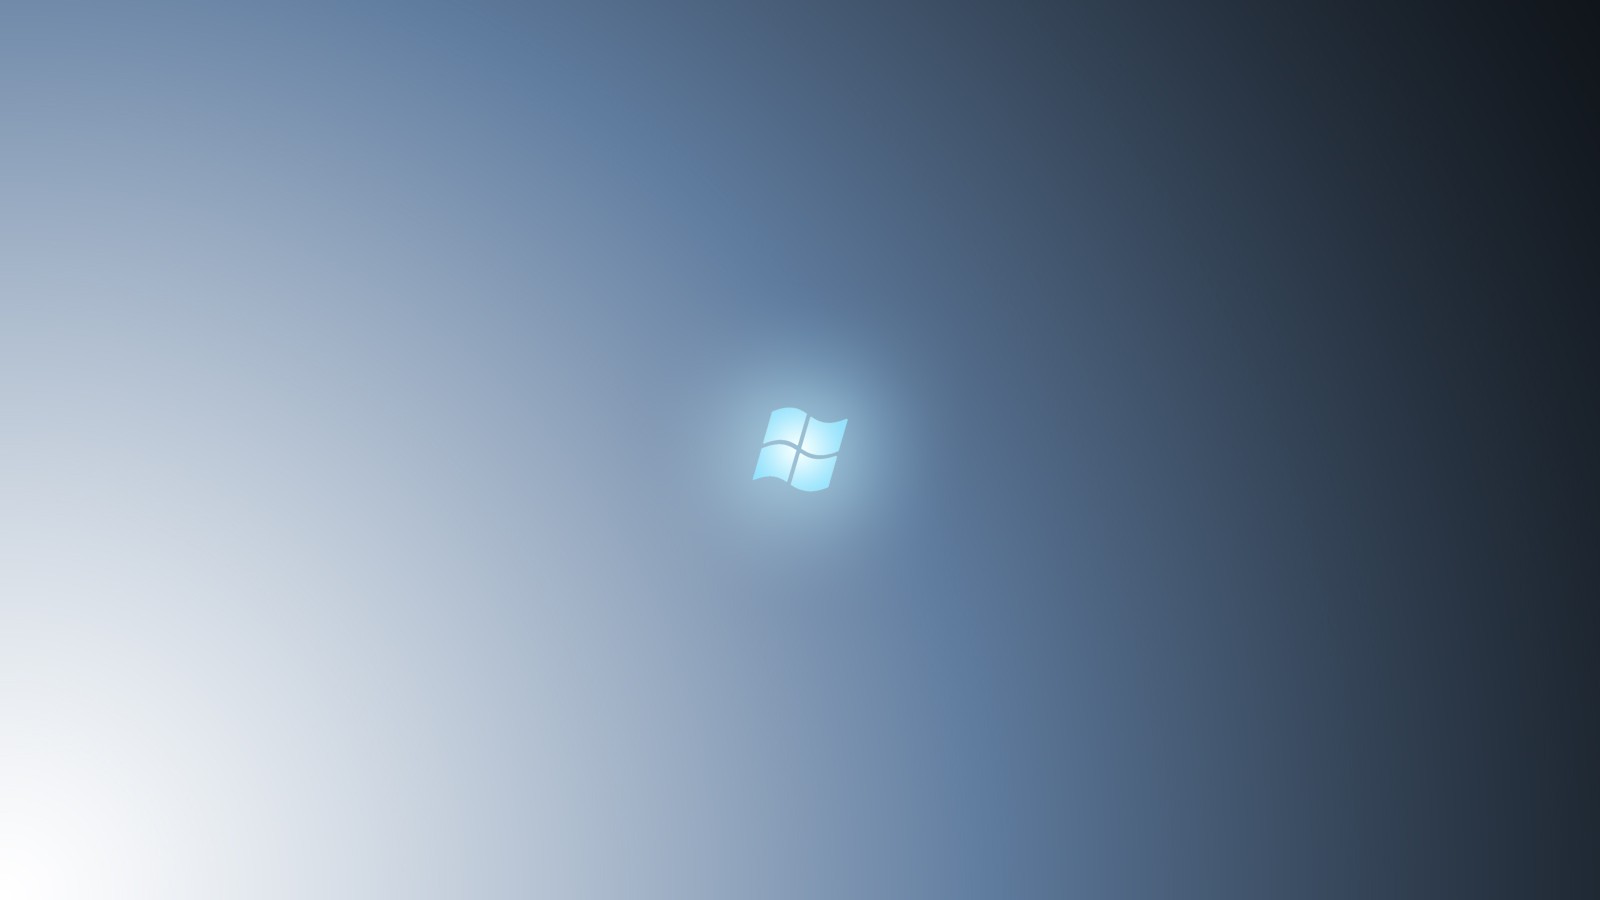 Windows 7 Wallpaper HD 1600x900